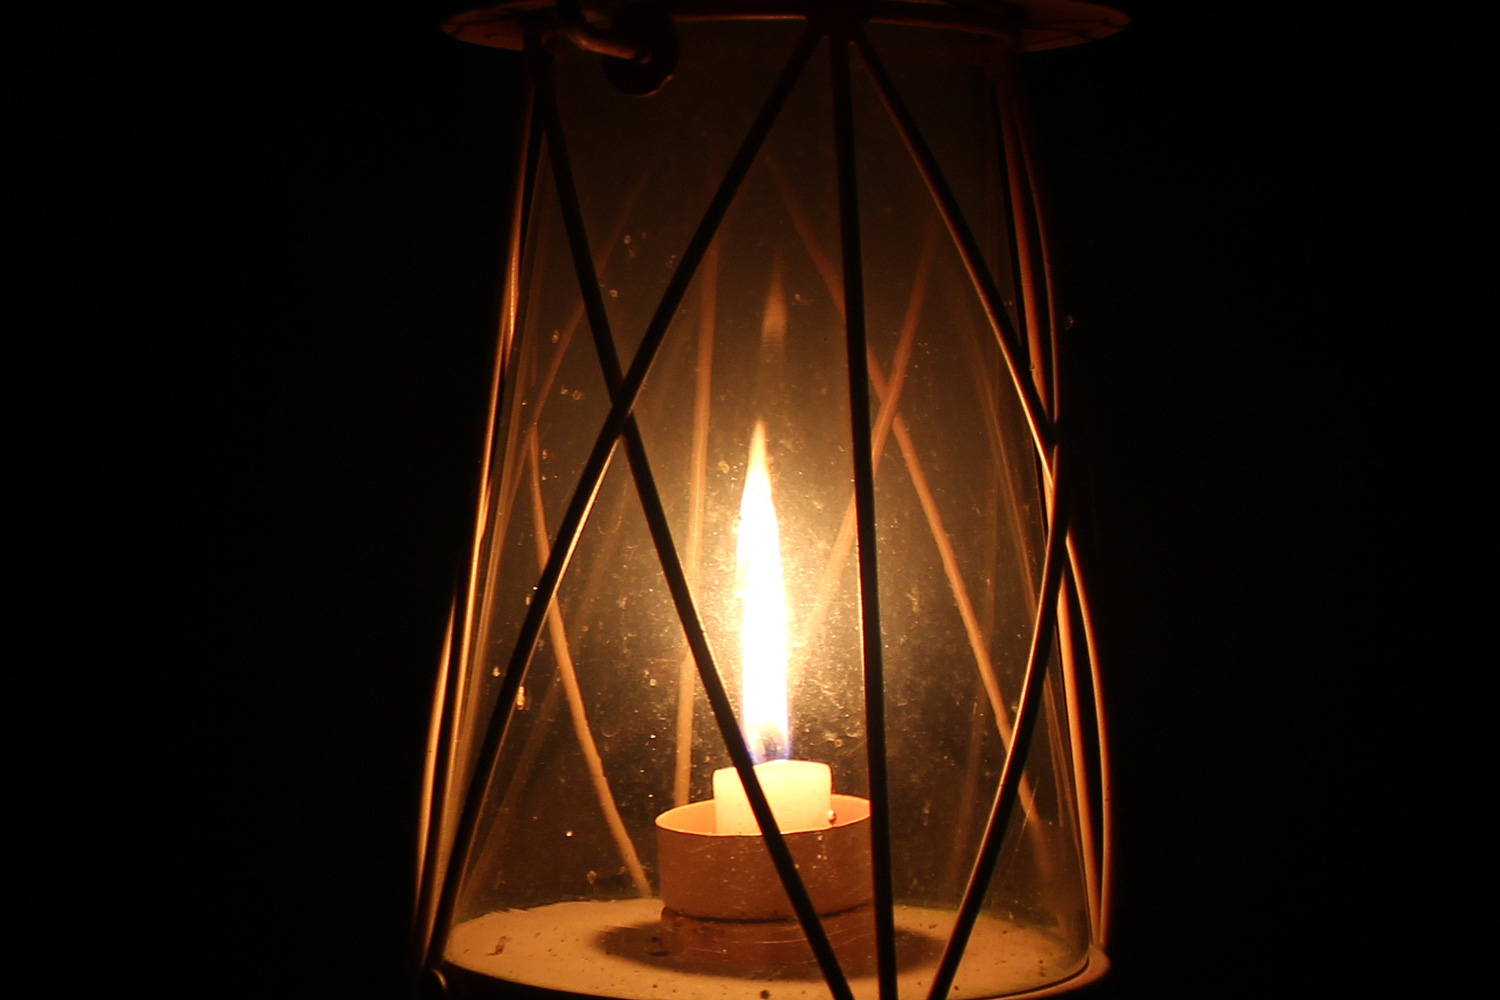 Old lantern burning in dark room